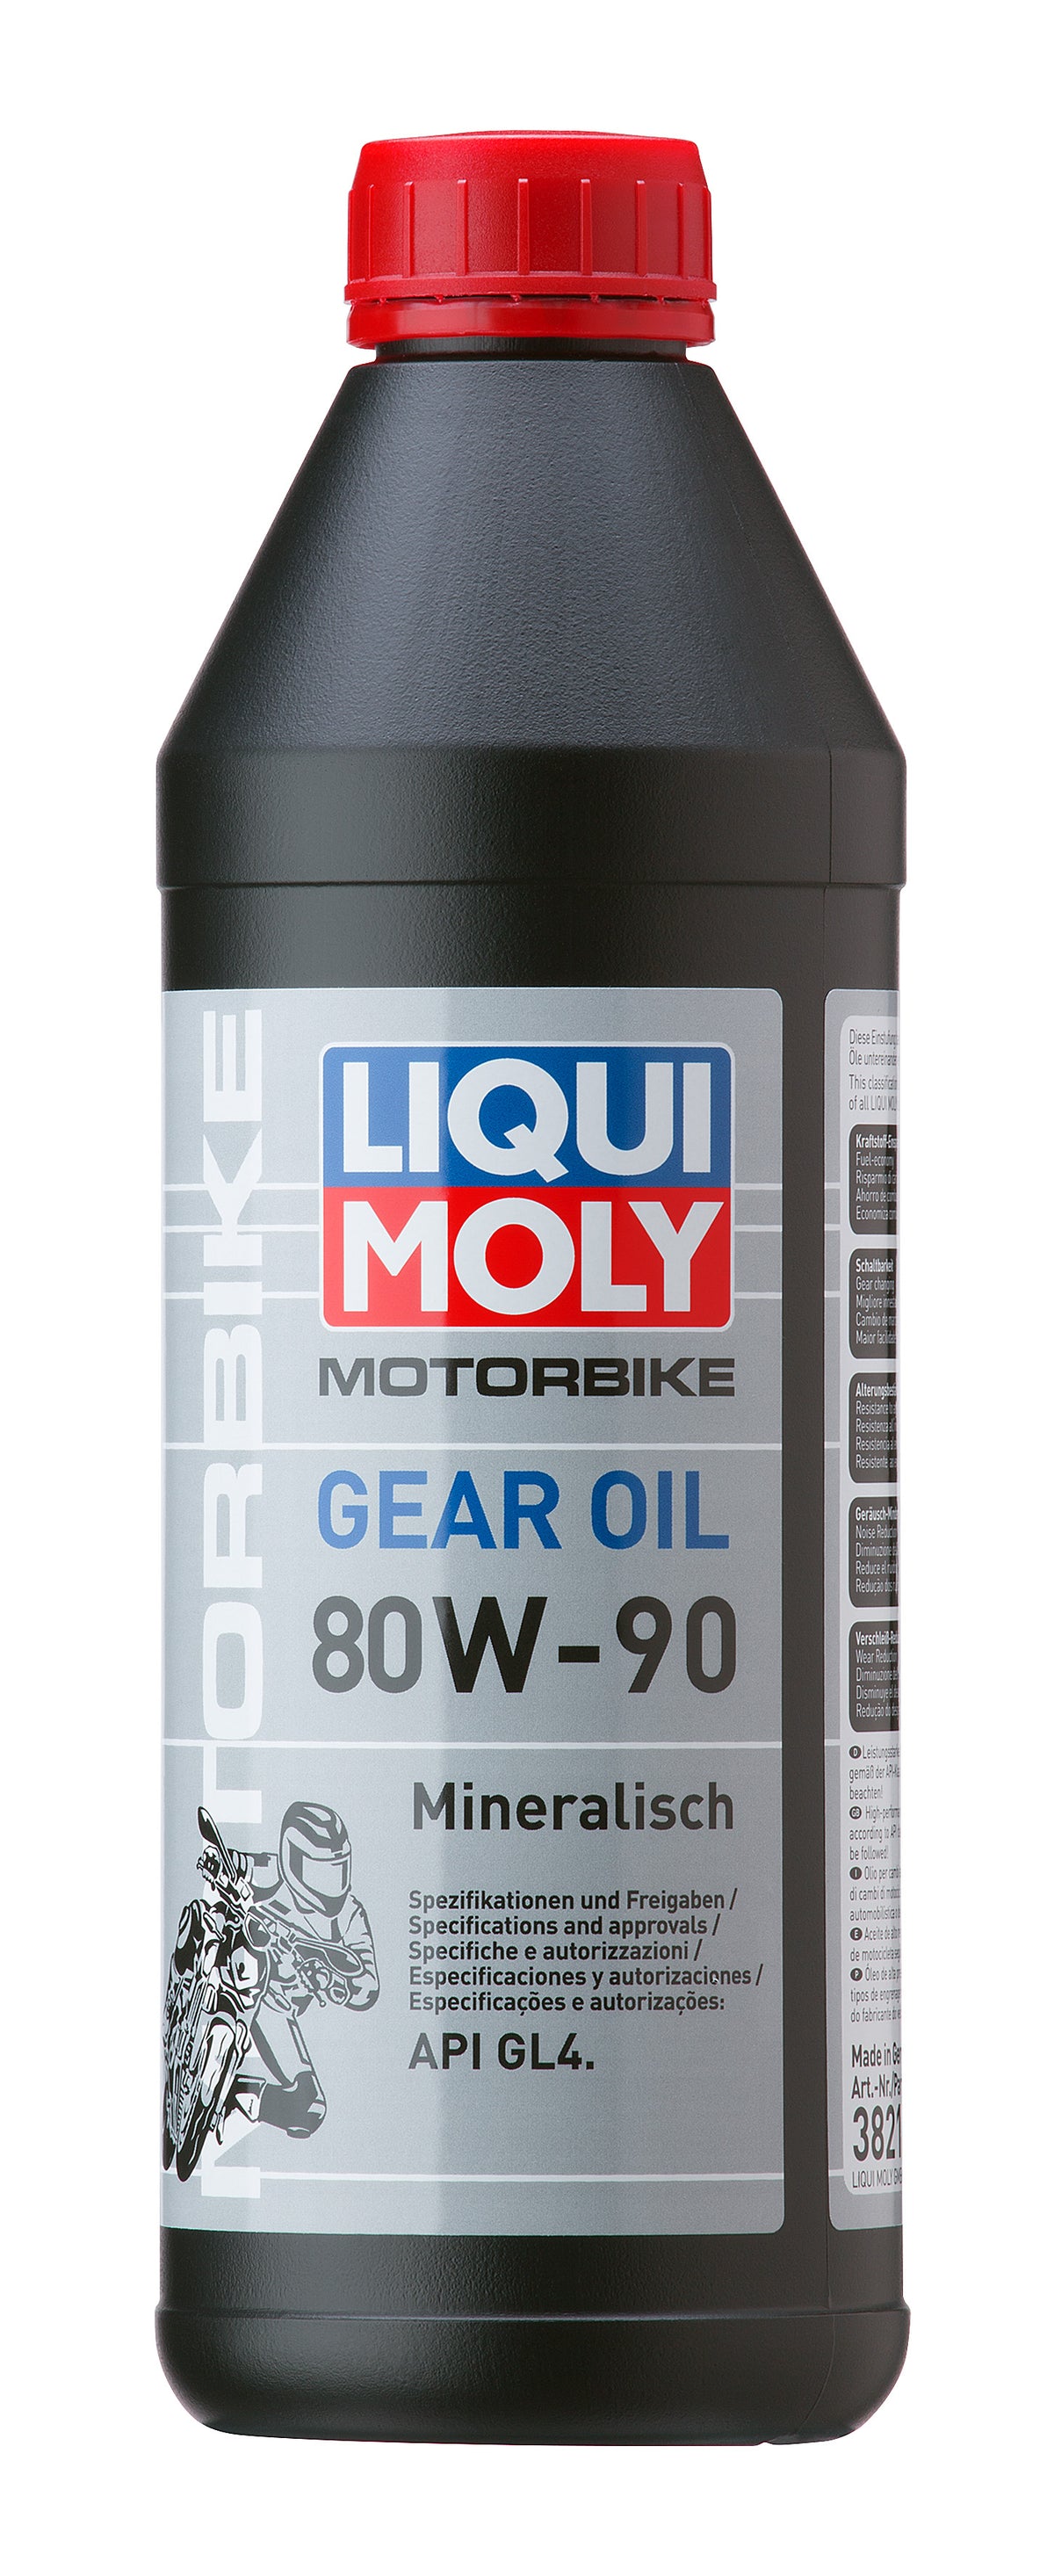 Transmissieolie Liqui Moly 80W-90 (1L)